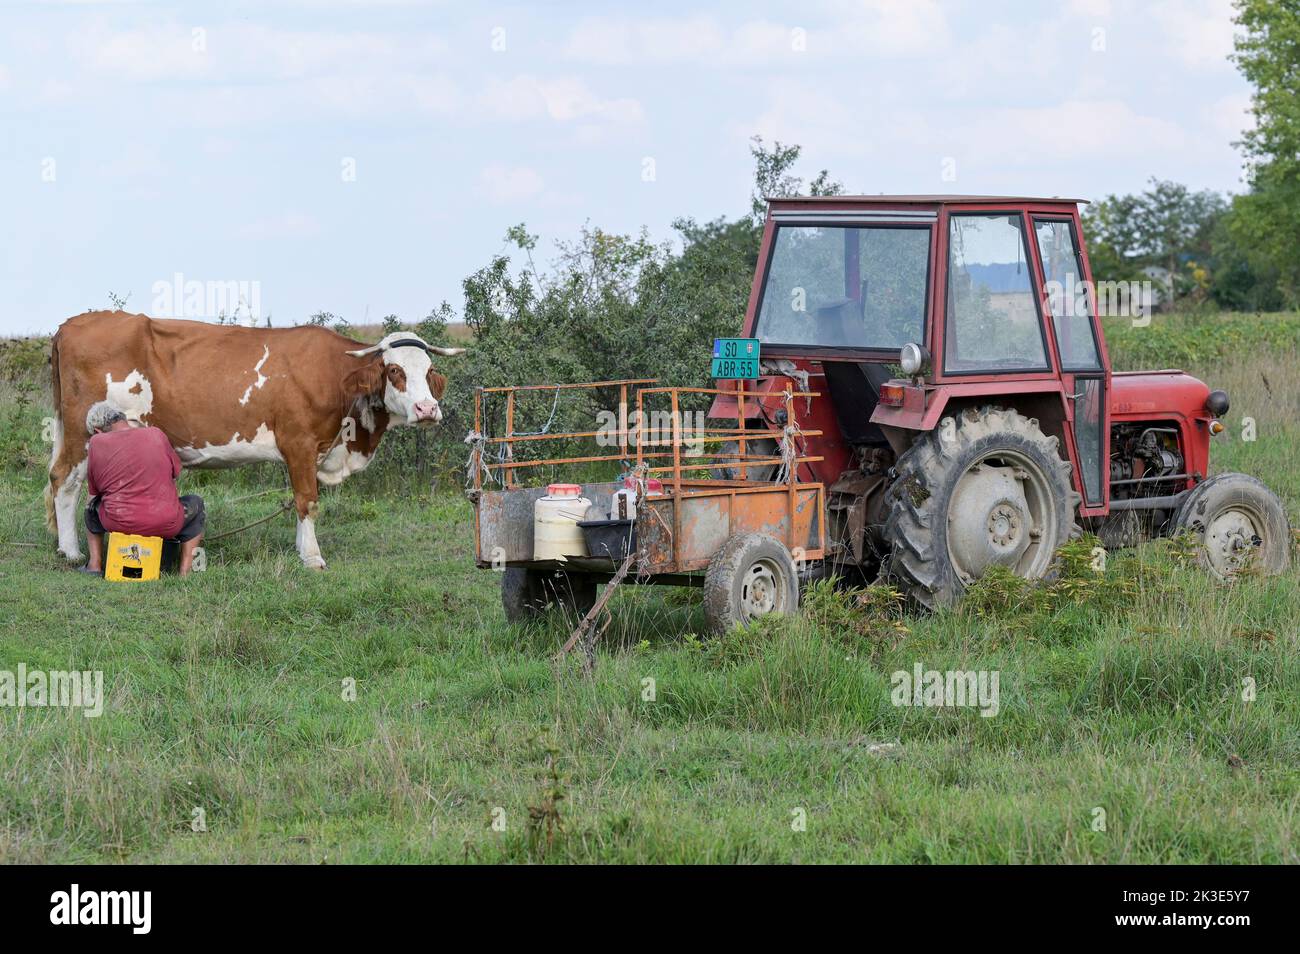 SERBIA, Regione Vojvodina, piccolo contadino che mungeva la sua mucca sul campo, vecchio trattore IMT / SERBIEN, Regione Vojvodina, Alter IMT Traktor, Kleinbauer melkt Kuh am Feldrand Foto Stock